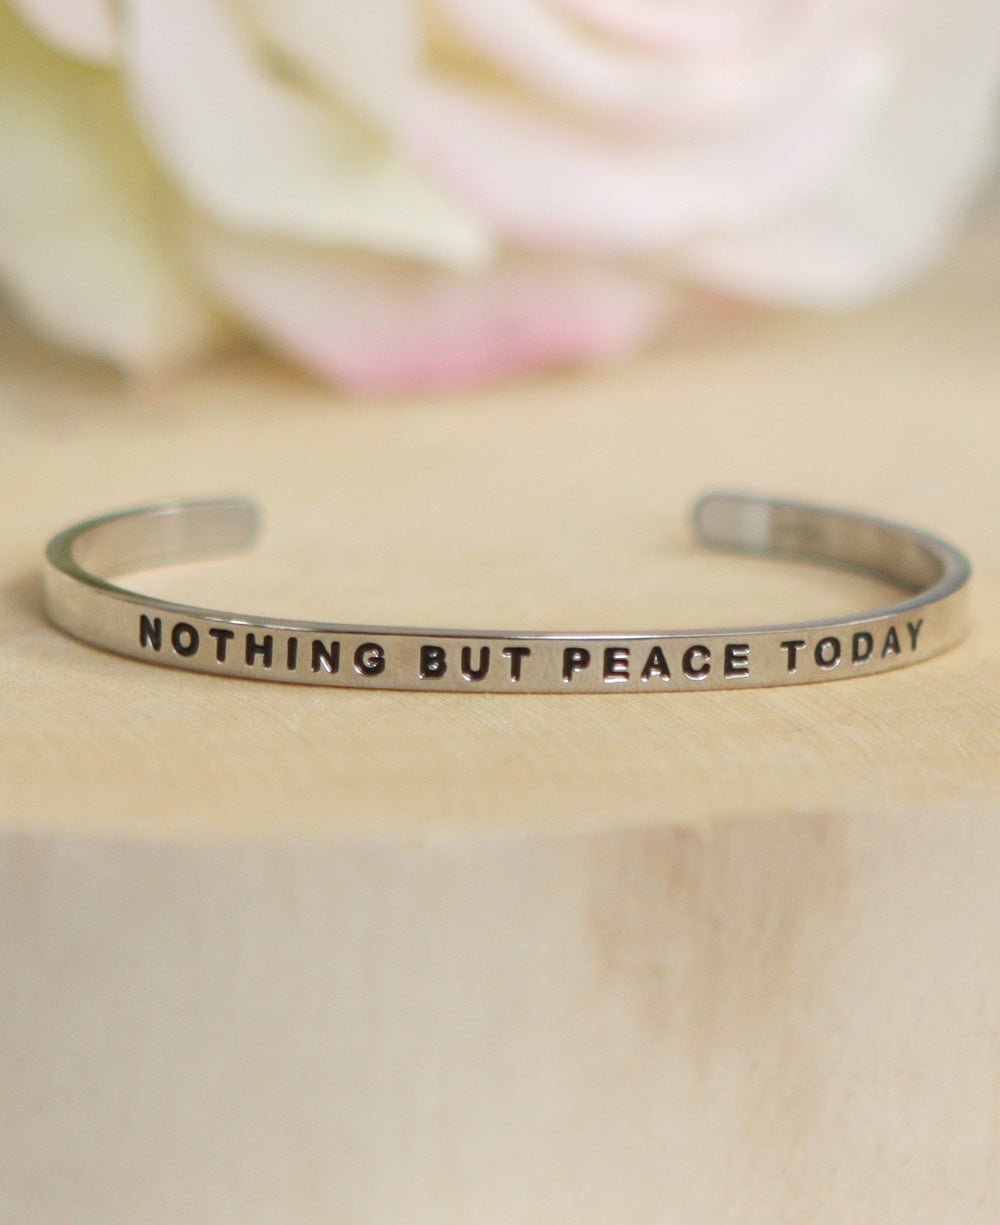 Inspirational Cuff Bracelet, Nothing But Peace Today - Bracelets